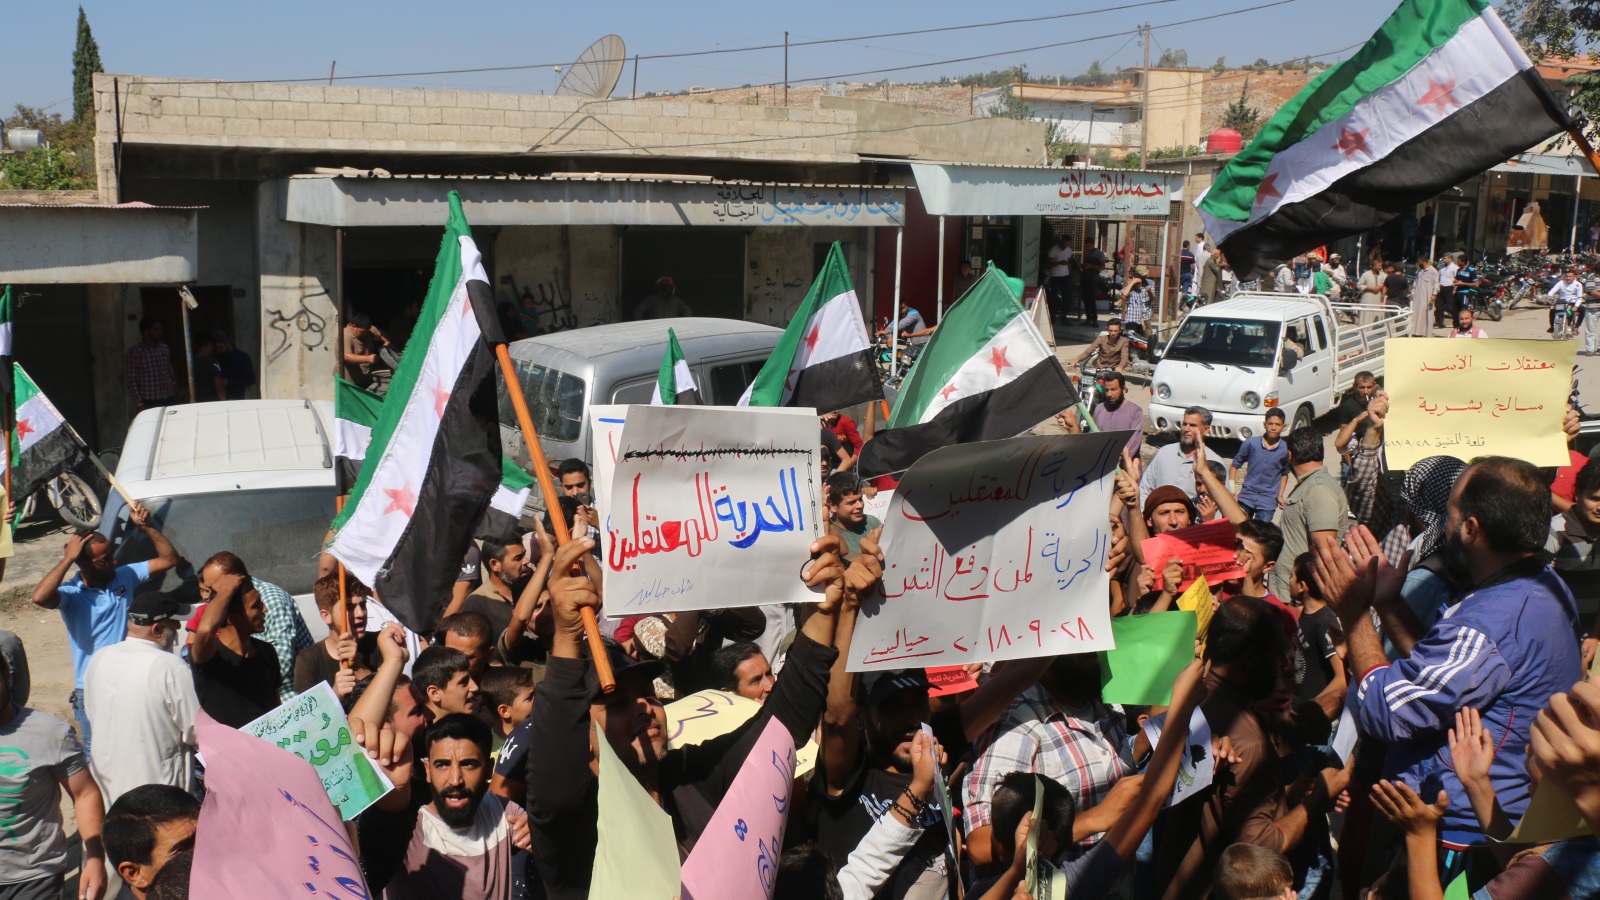 ‪مظاهرة مناوئة للنظام السوري في قلعة المضيق بريف حماة للمطالبة بالحرية للمعتقلين‬ (الأناضول)